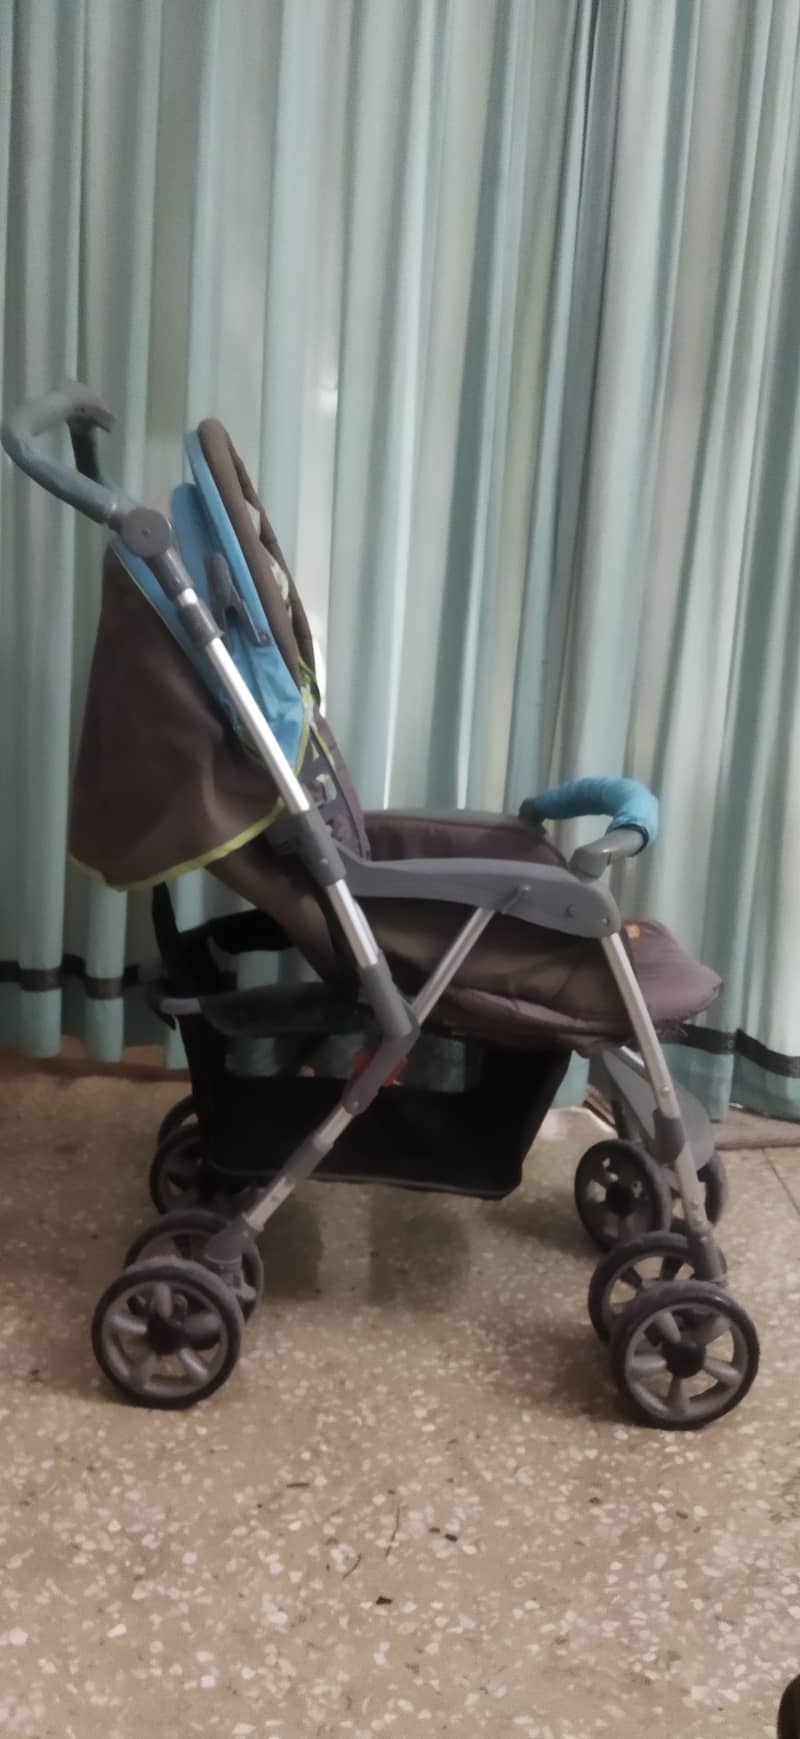 Junior's Brand imported baby stroller / pram 2